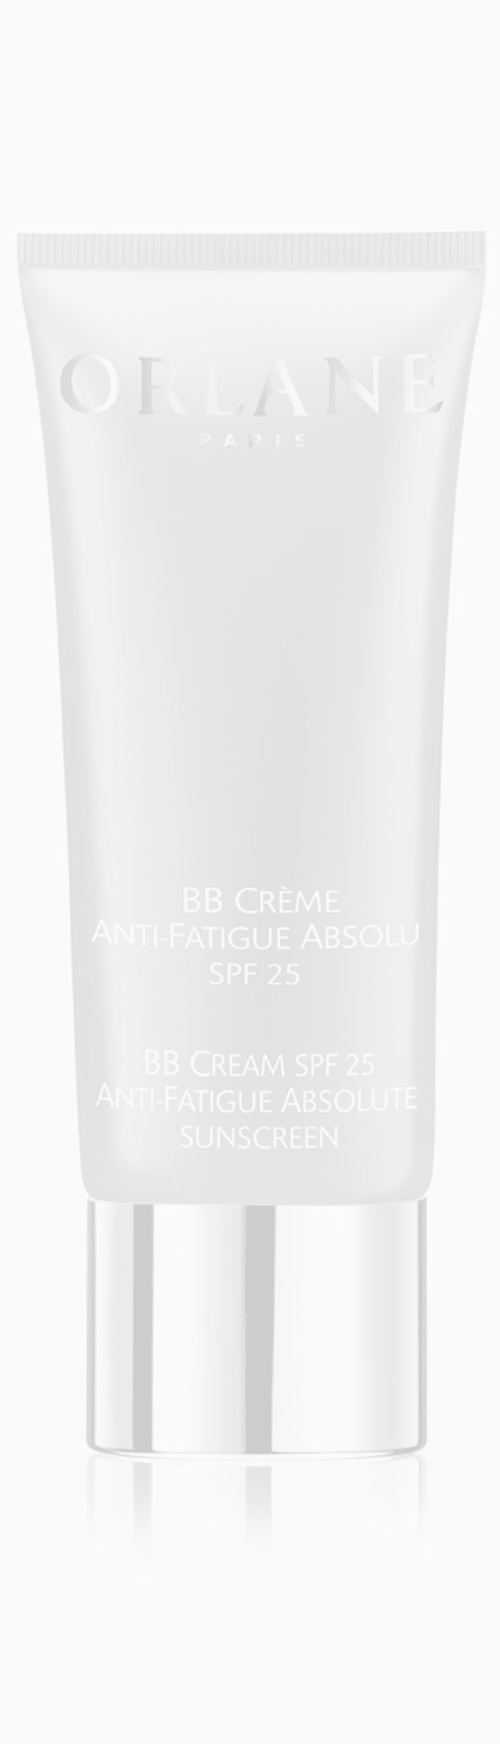 ΒΒ Creme Anti-Fatigue, Absolu SPF 25, Orlane